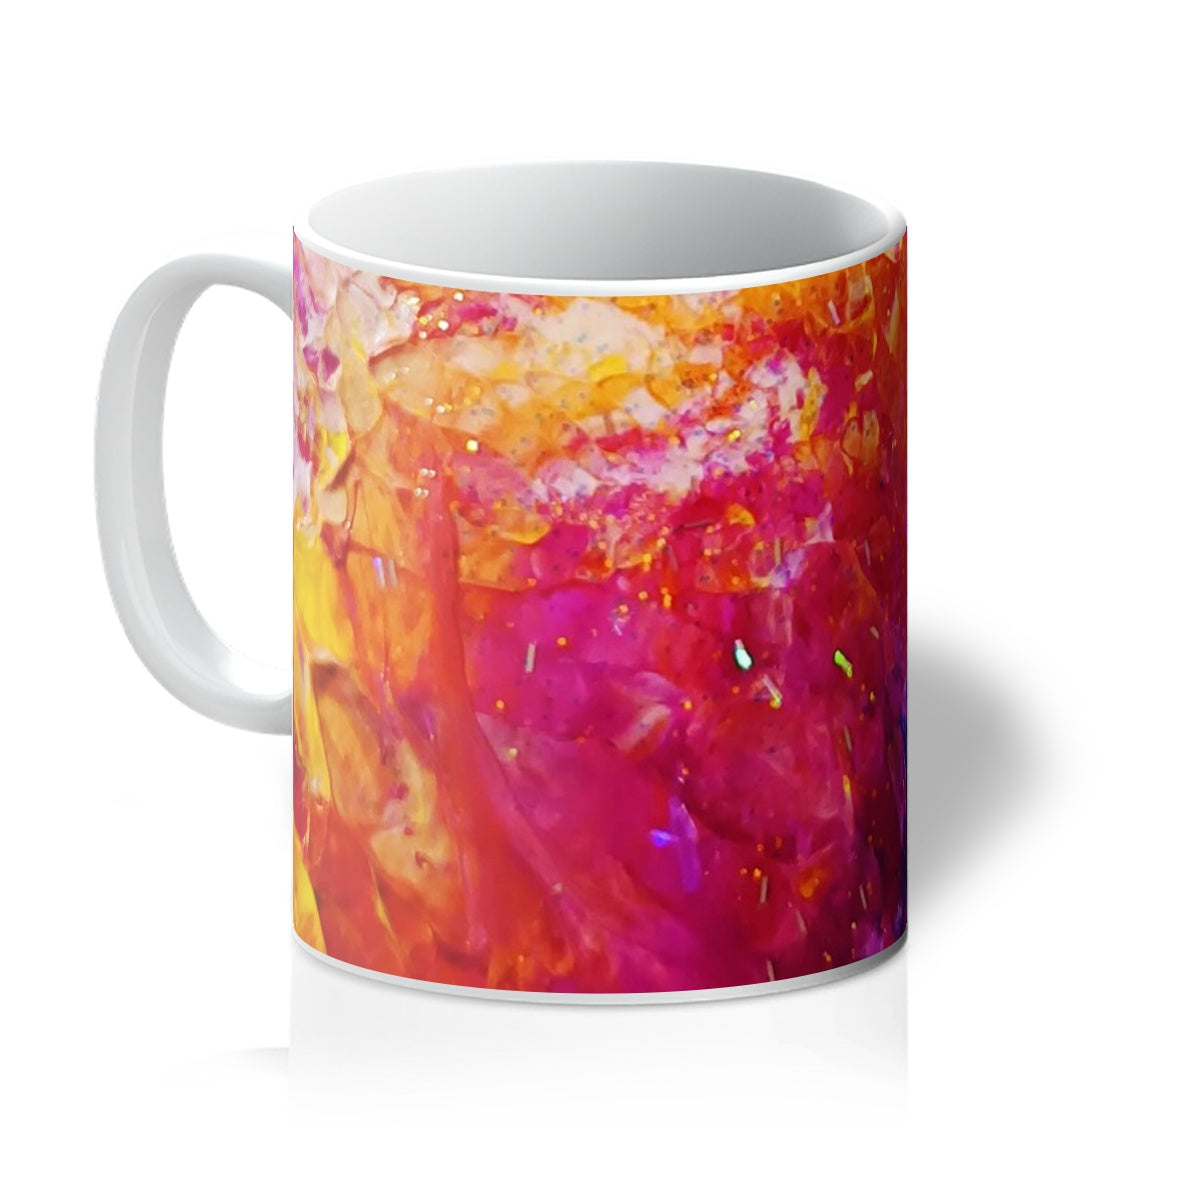 Colour Of Love Mug